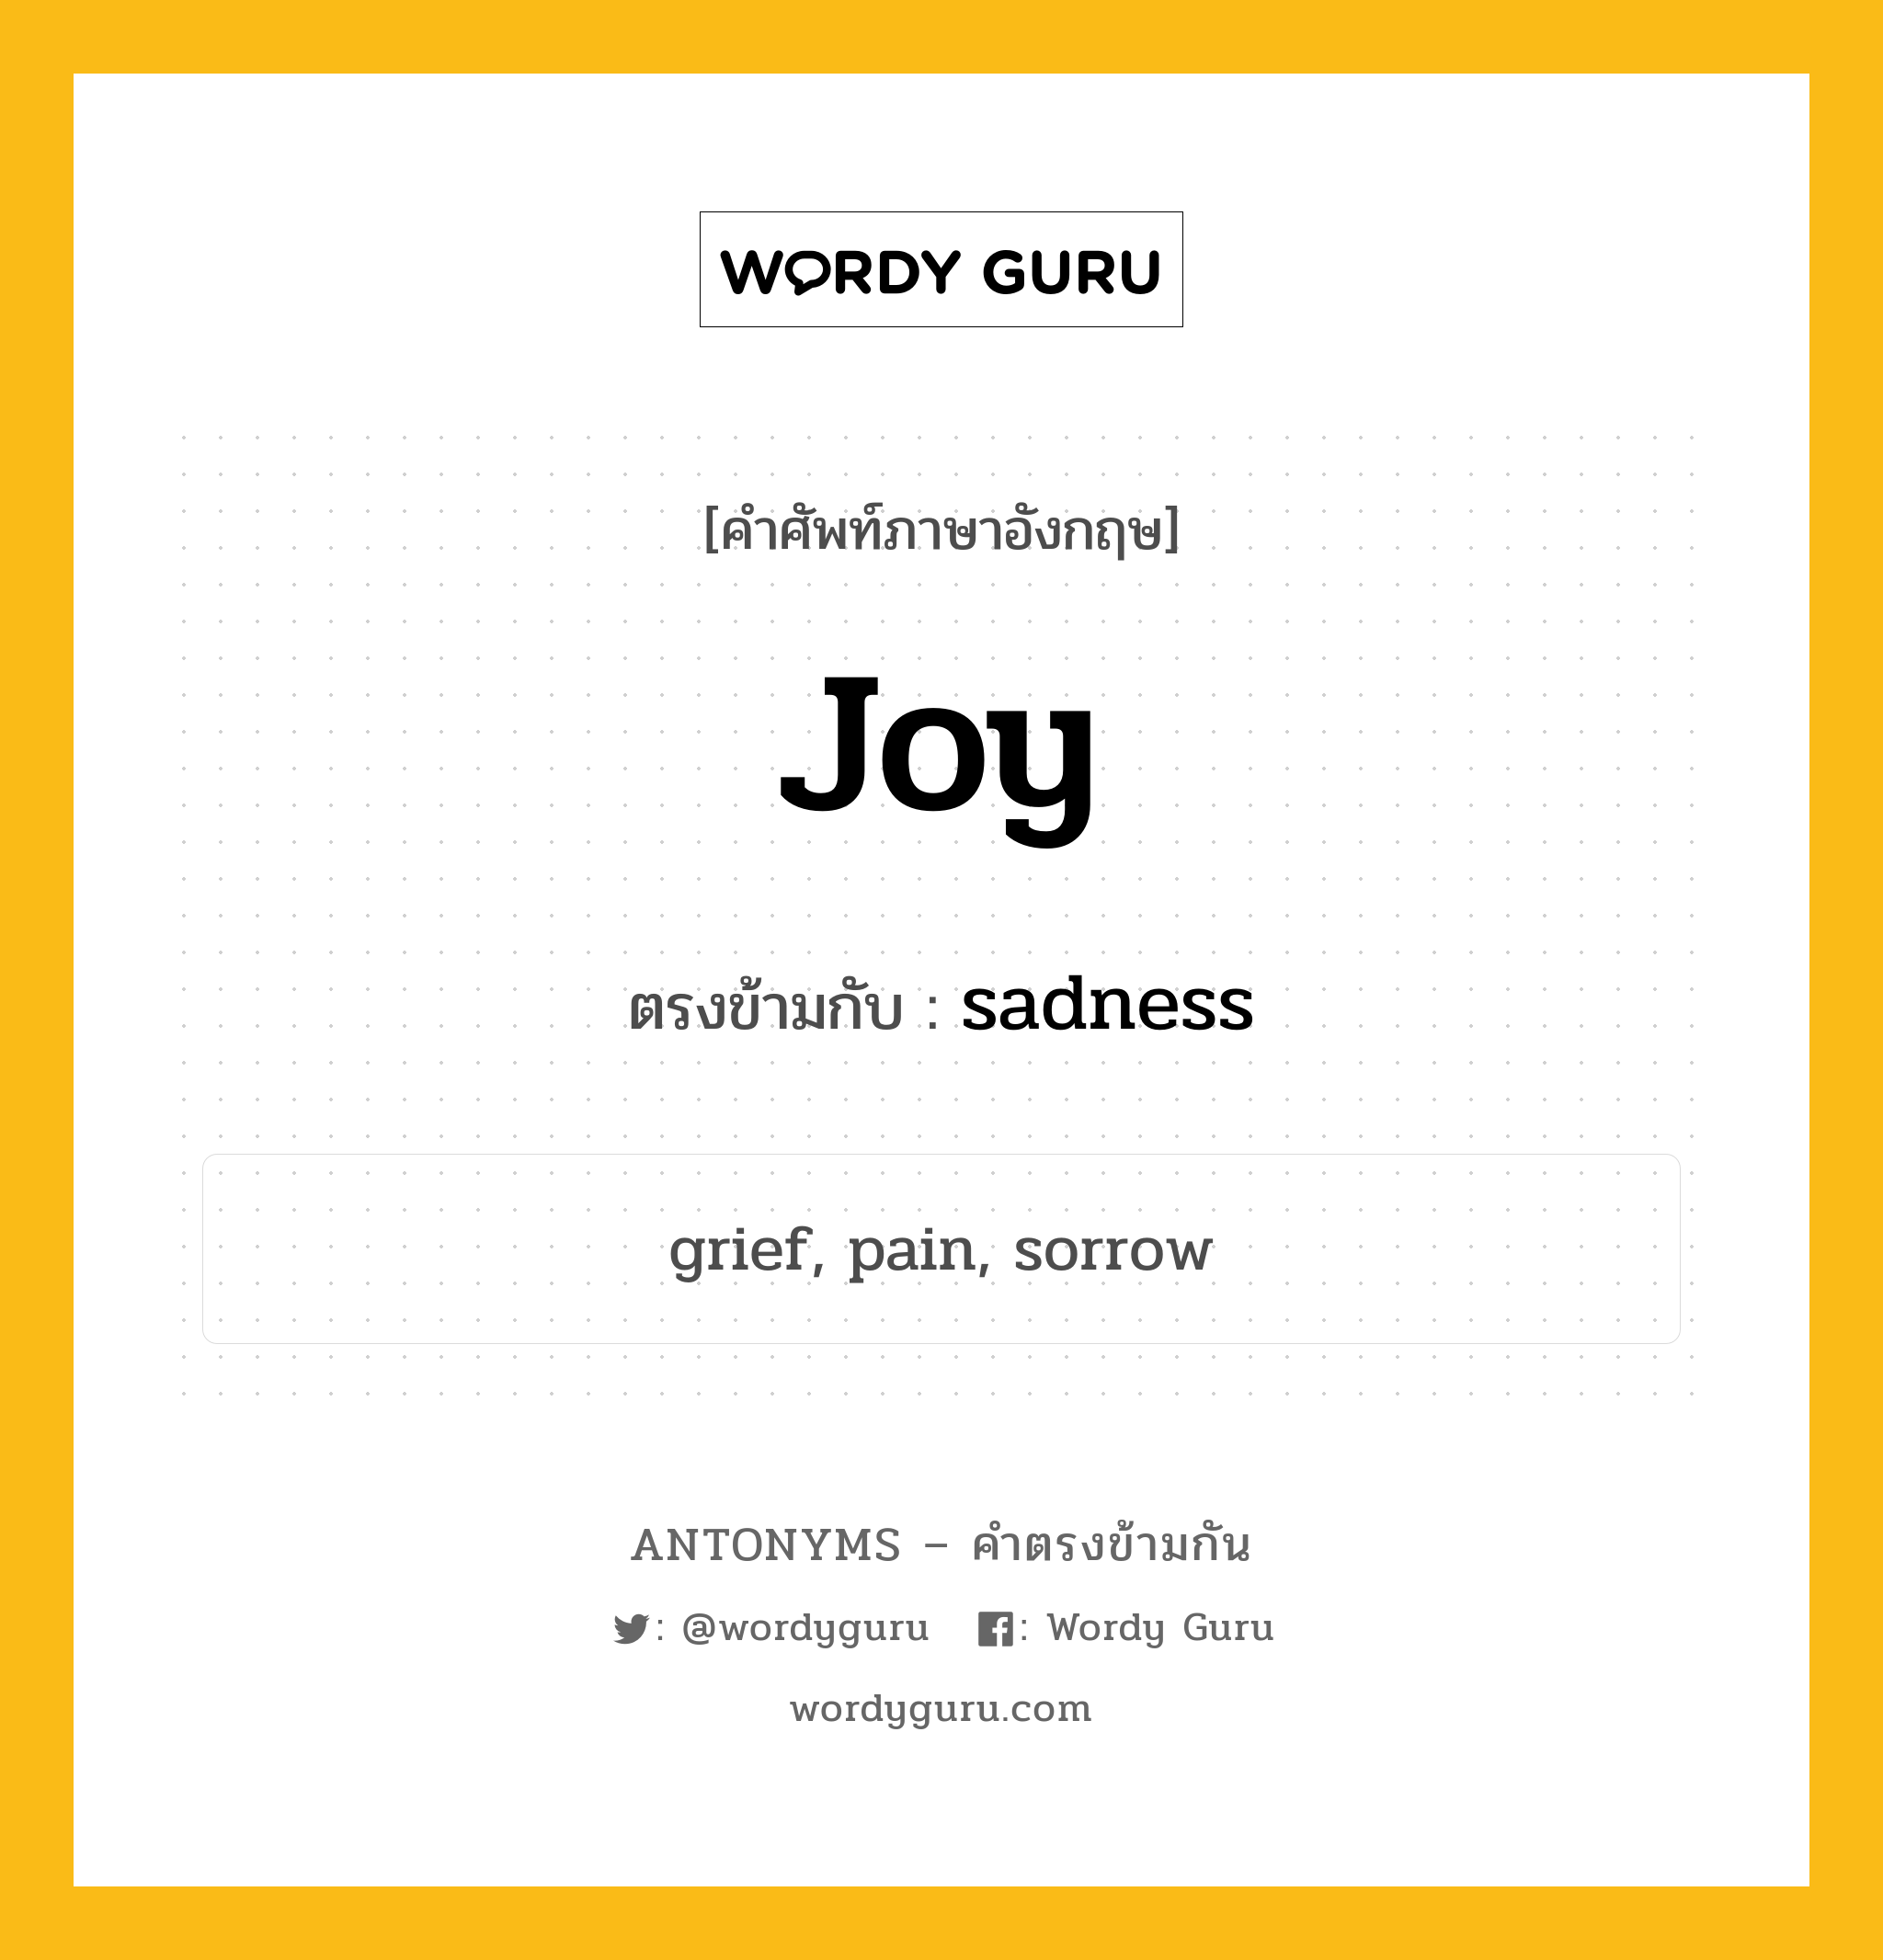 joy เป็นคำตรงข้ามกับคำไหนบ้าง?, คำศัพท์ภาษาอังกฤษ joy ตรงข้ามกับ sadness หมวด sadness